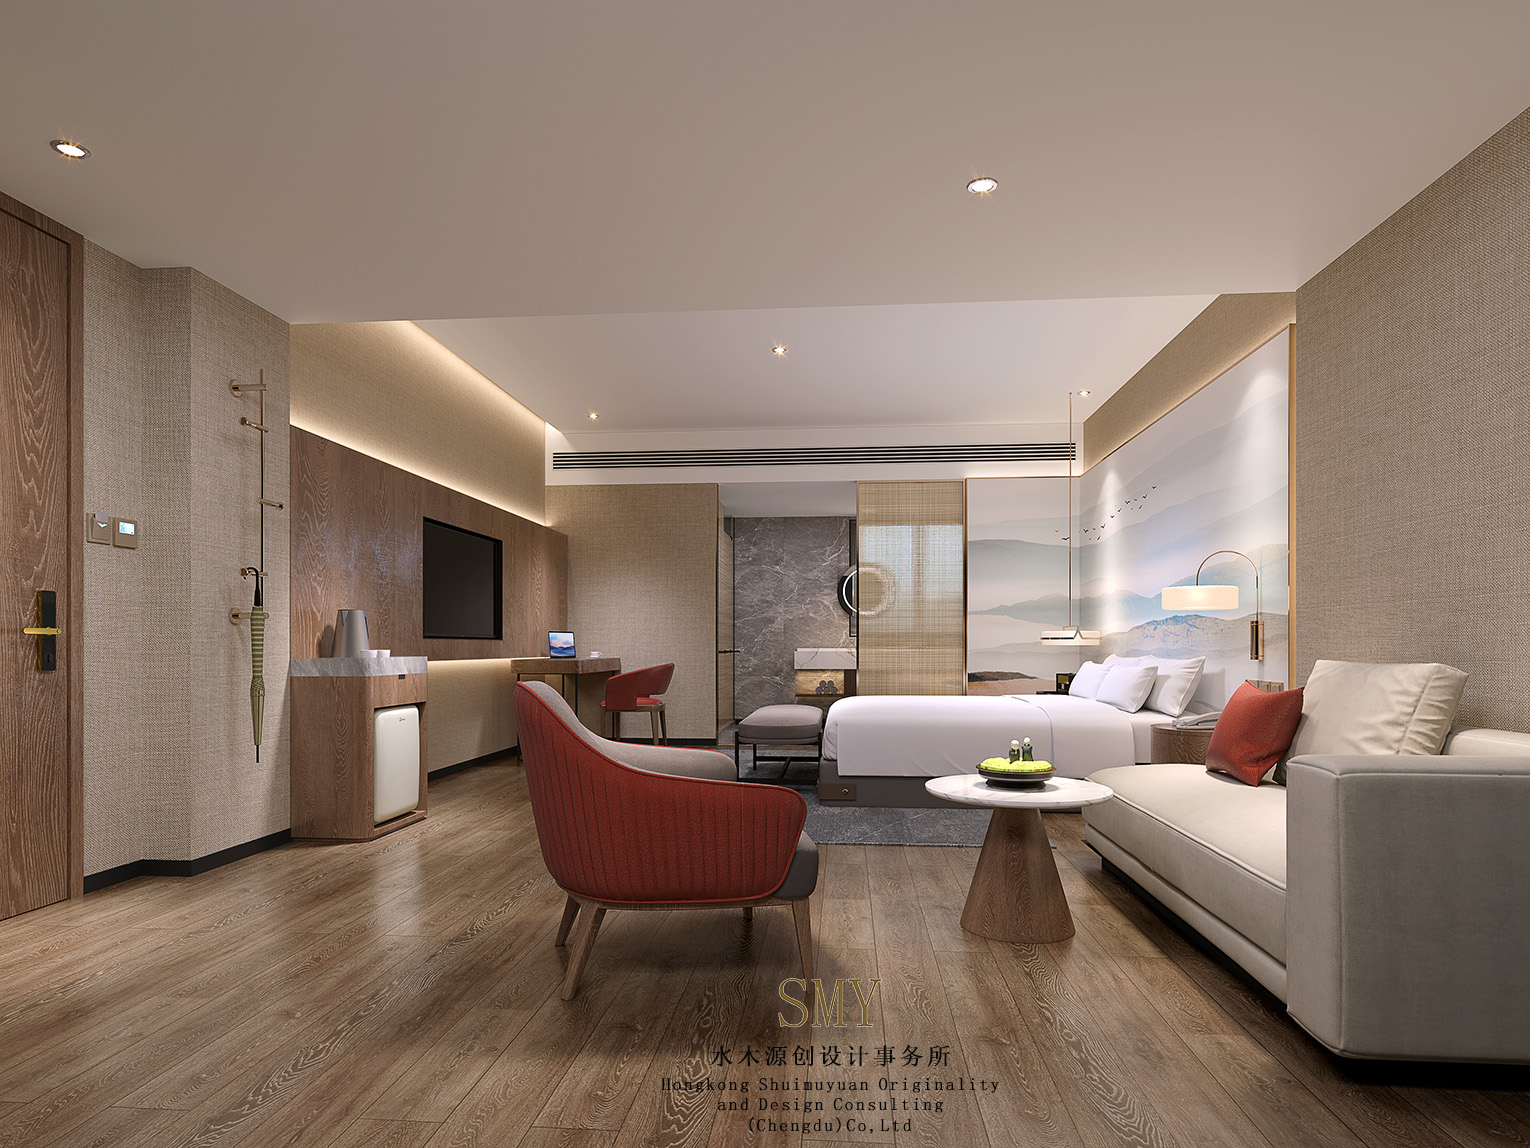 標準商務間客房裝修設計、雲南酒店客房裝修效果